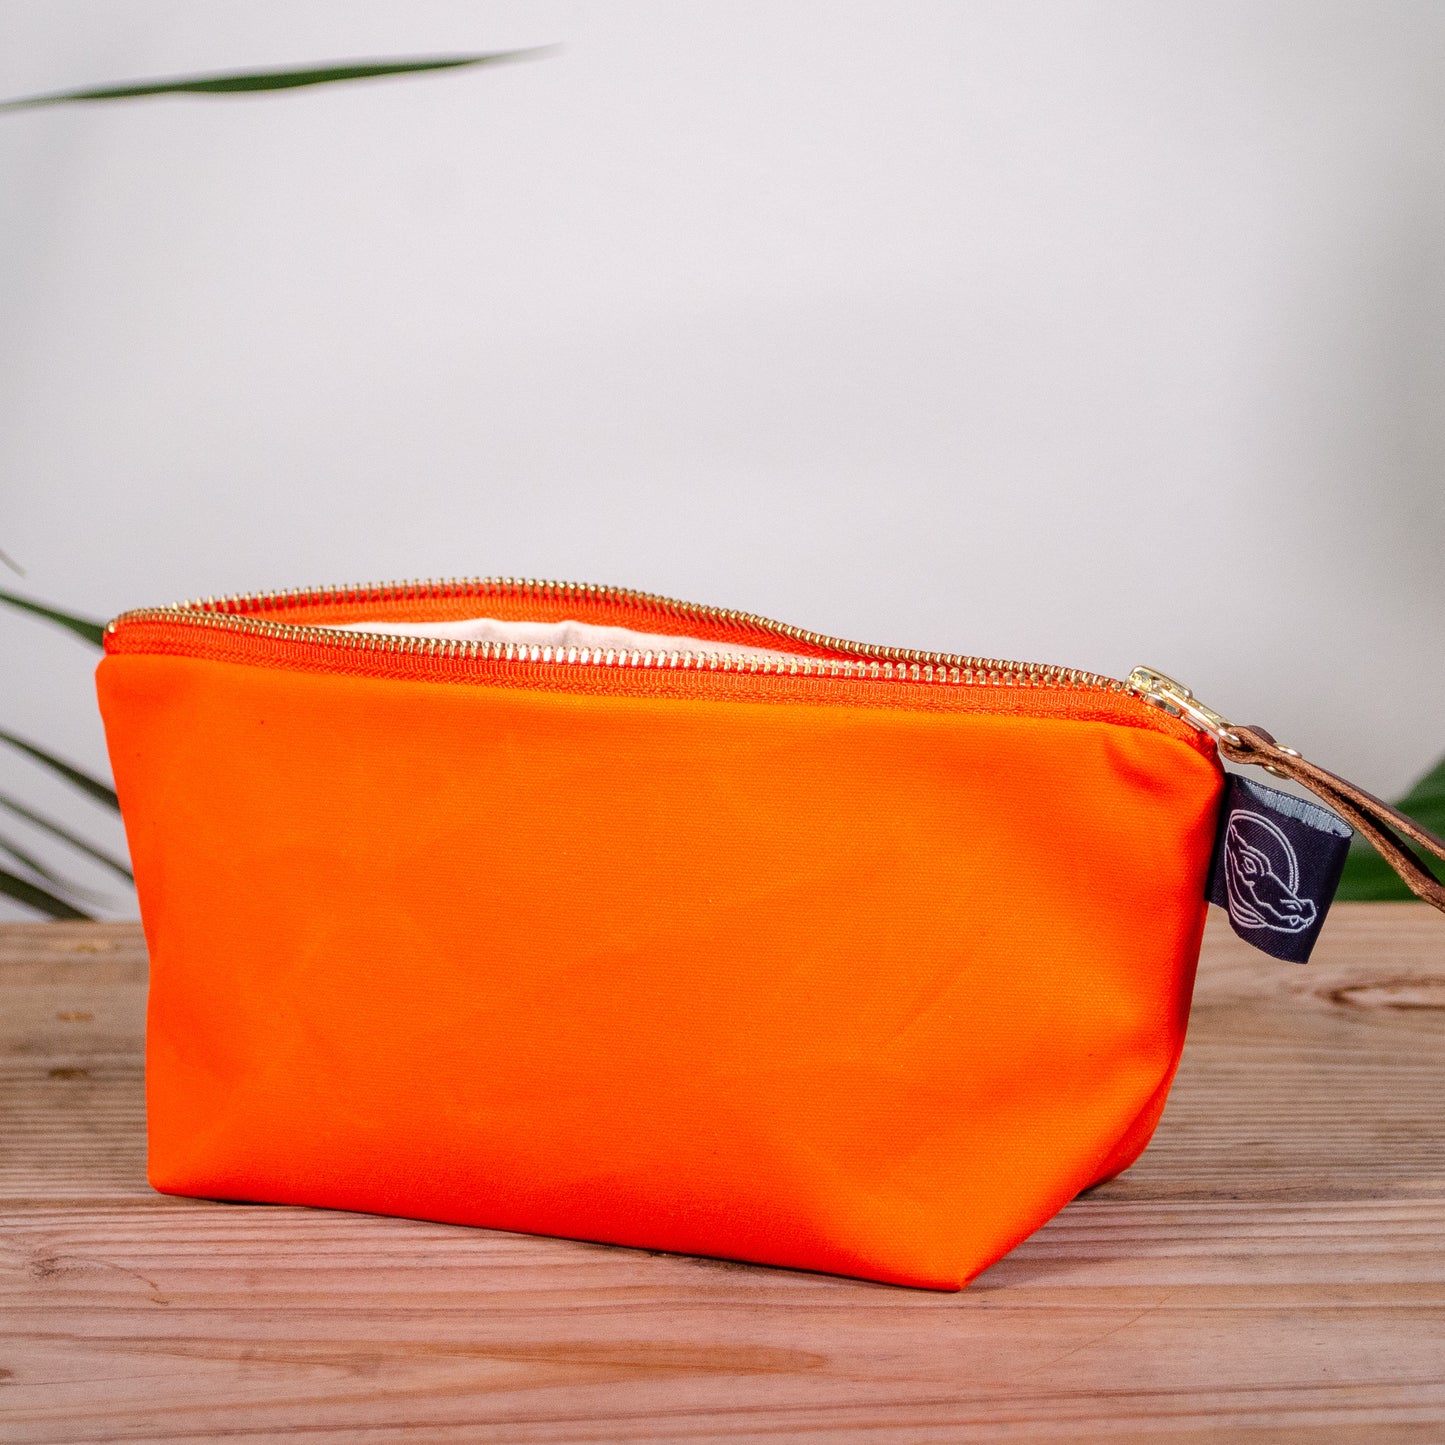 Orange Bag No. 1 - The Essentials Bag